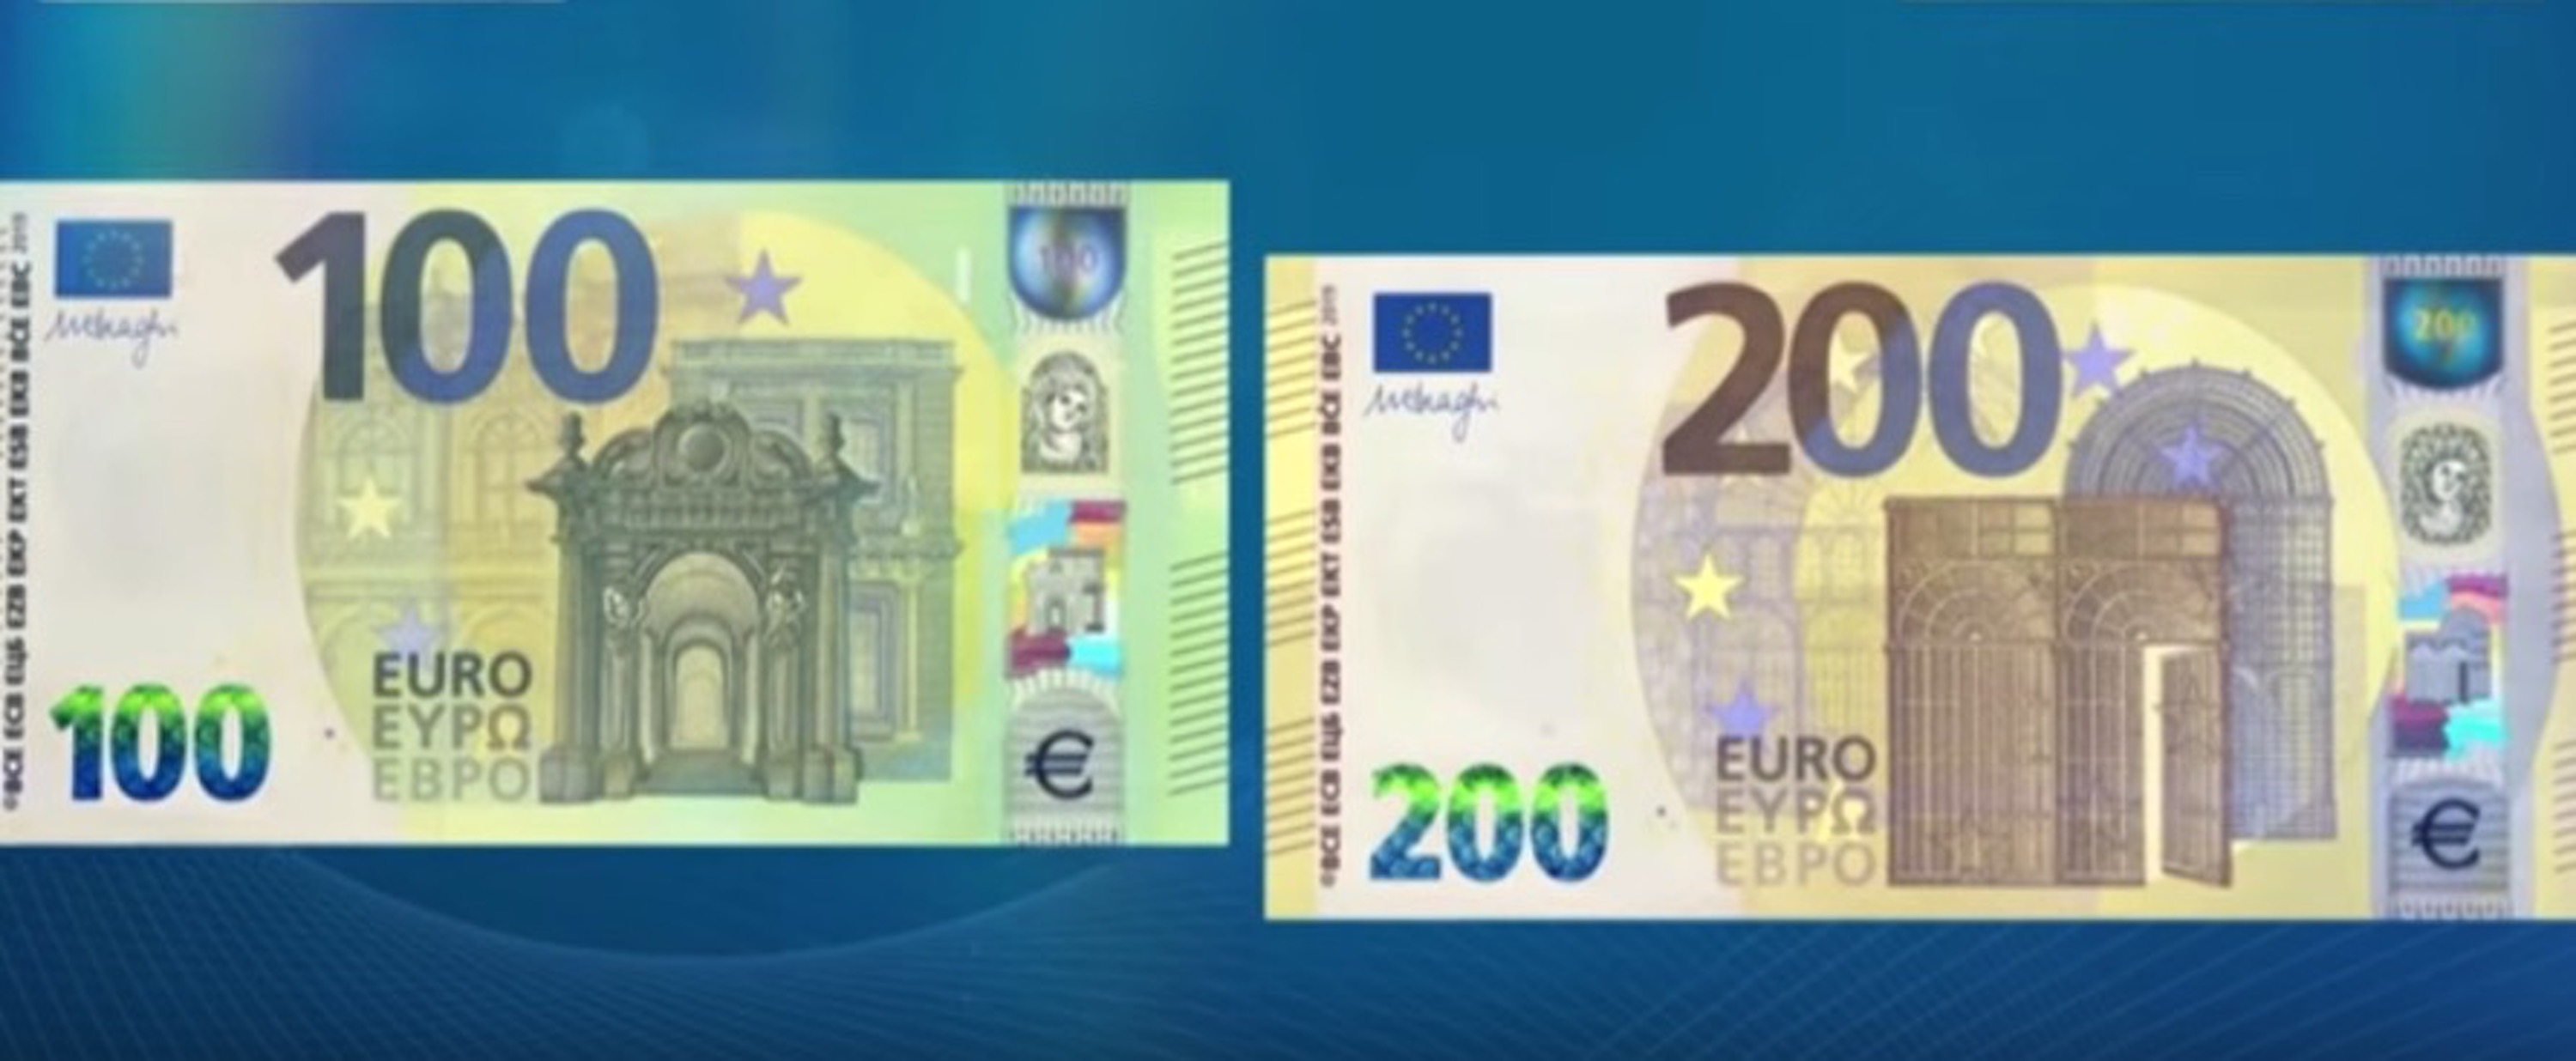 Nuove banconote da 100 e 200 euro cosa cambia con il debutto